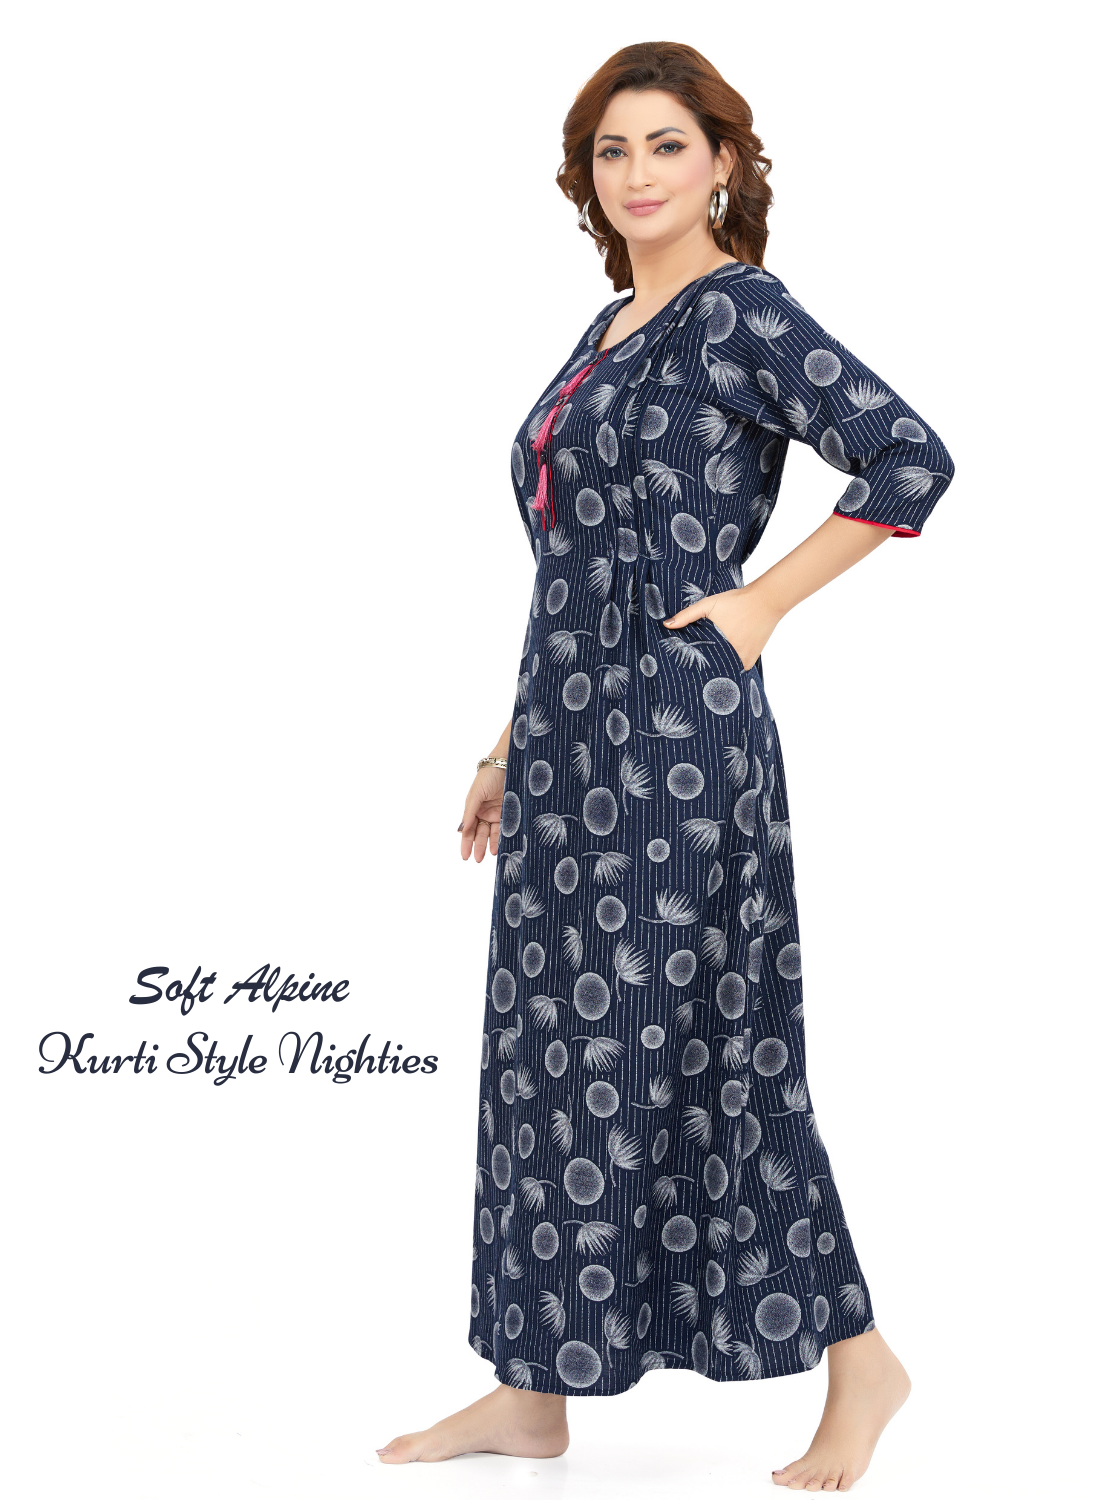 MANGAI Alpine KURTI Style | Beautiful Stylish KURTI Model | Fresh Collection's for Stylish Women's